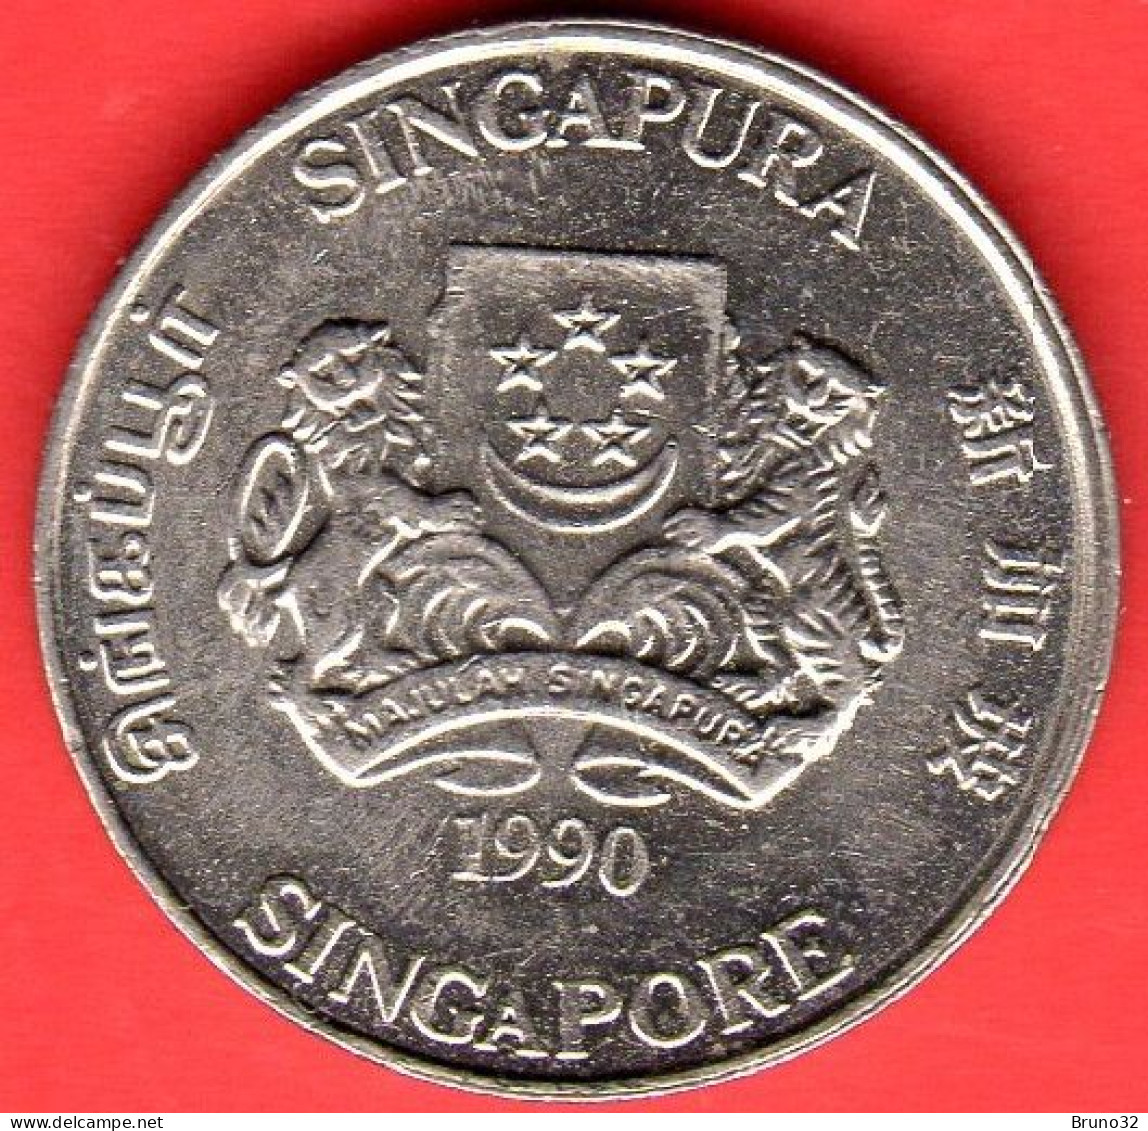 SINGAPORE - Singapura - 1990 - 20 Cents - QFDC/aUNC - Come Da Foto - Singapore